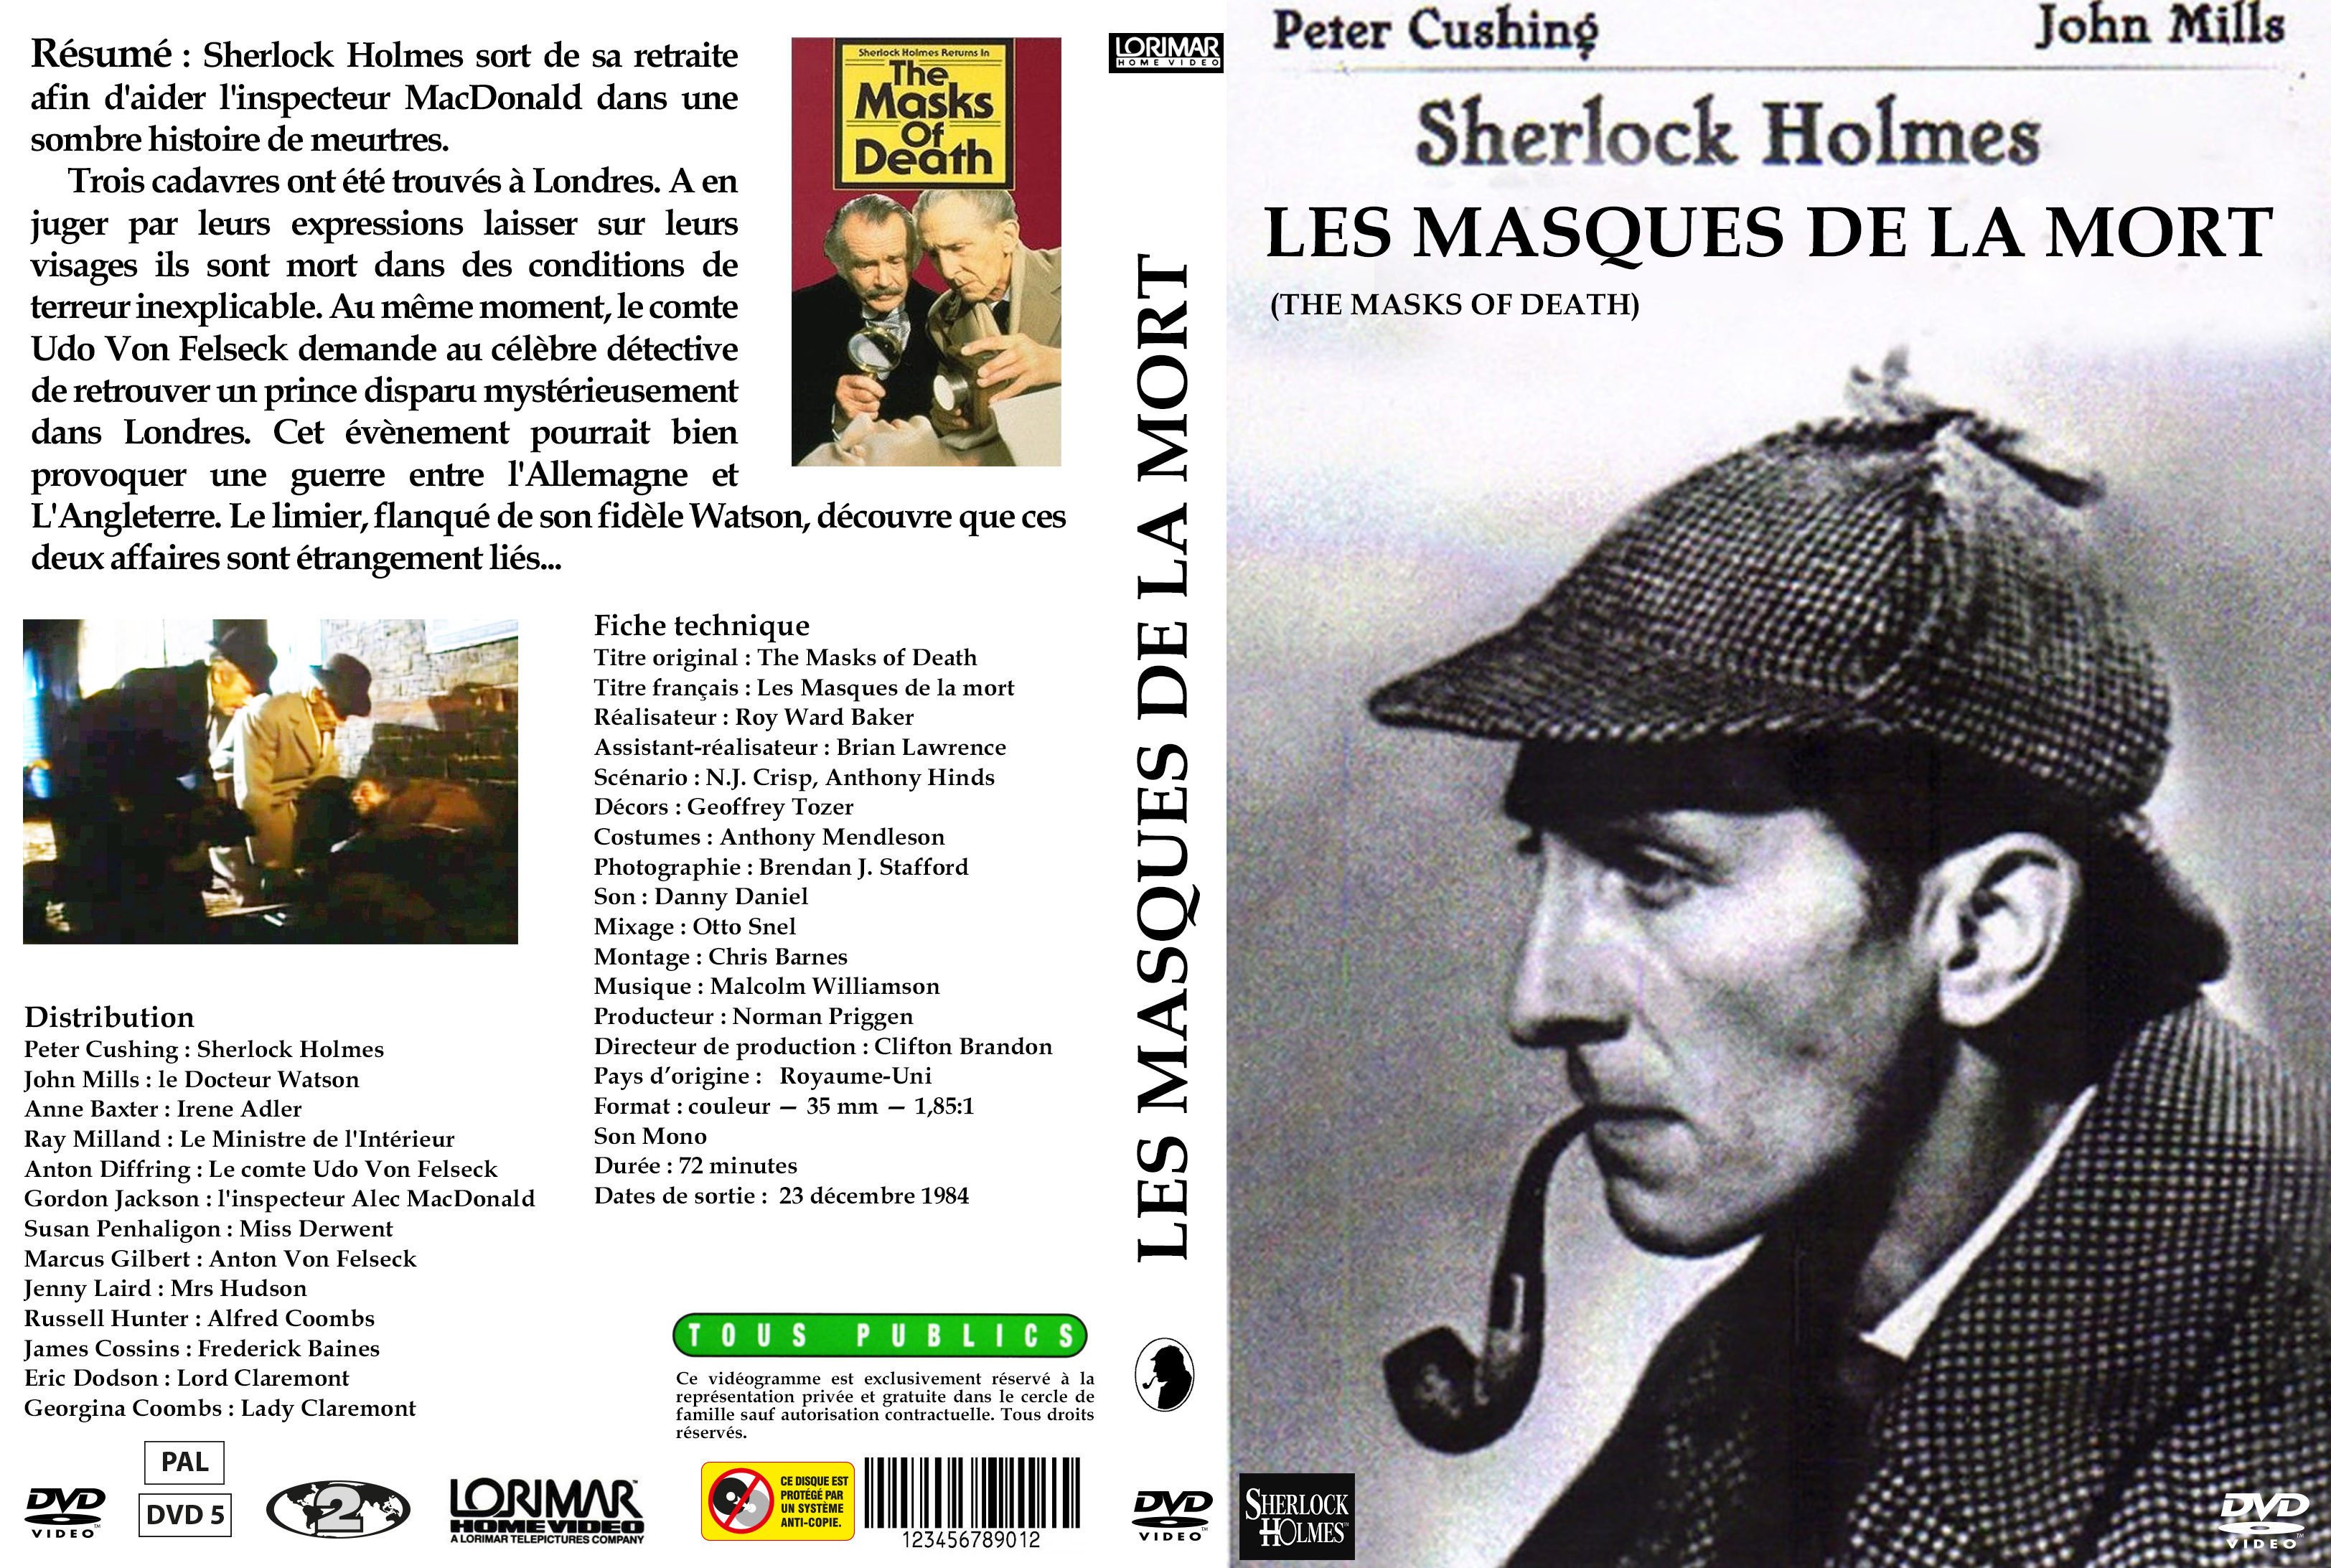 Jaquette DVD Sherlock Holmes les masques de la mort custom